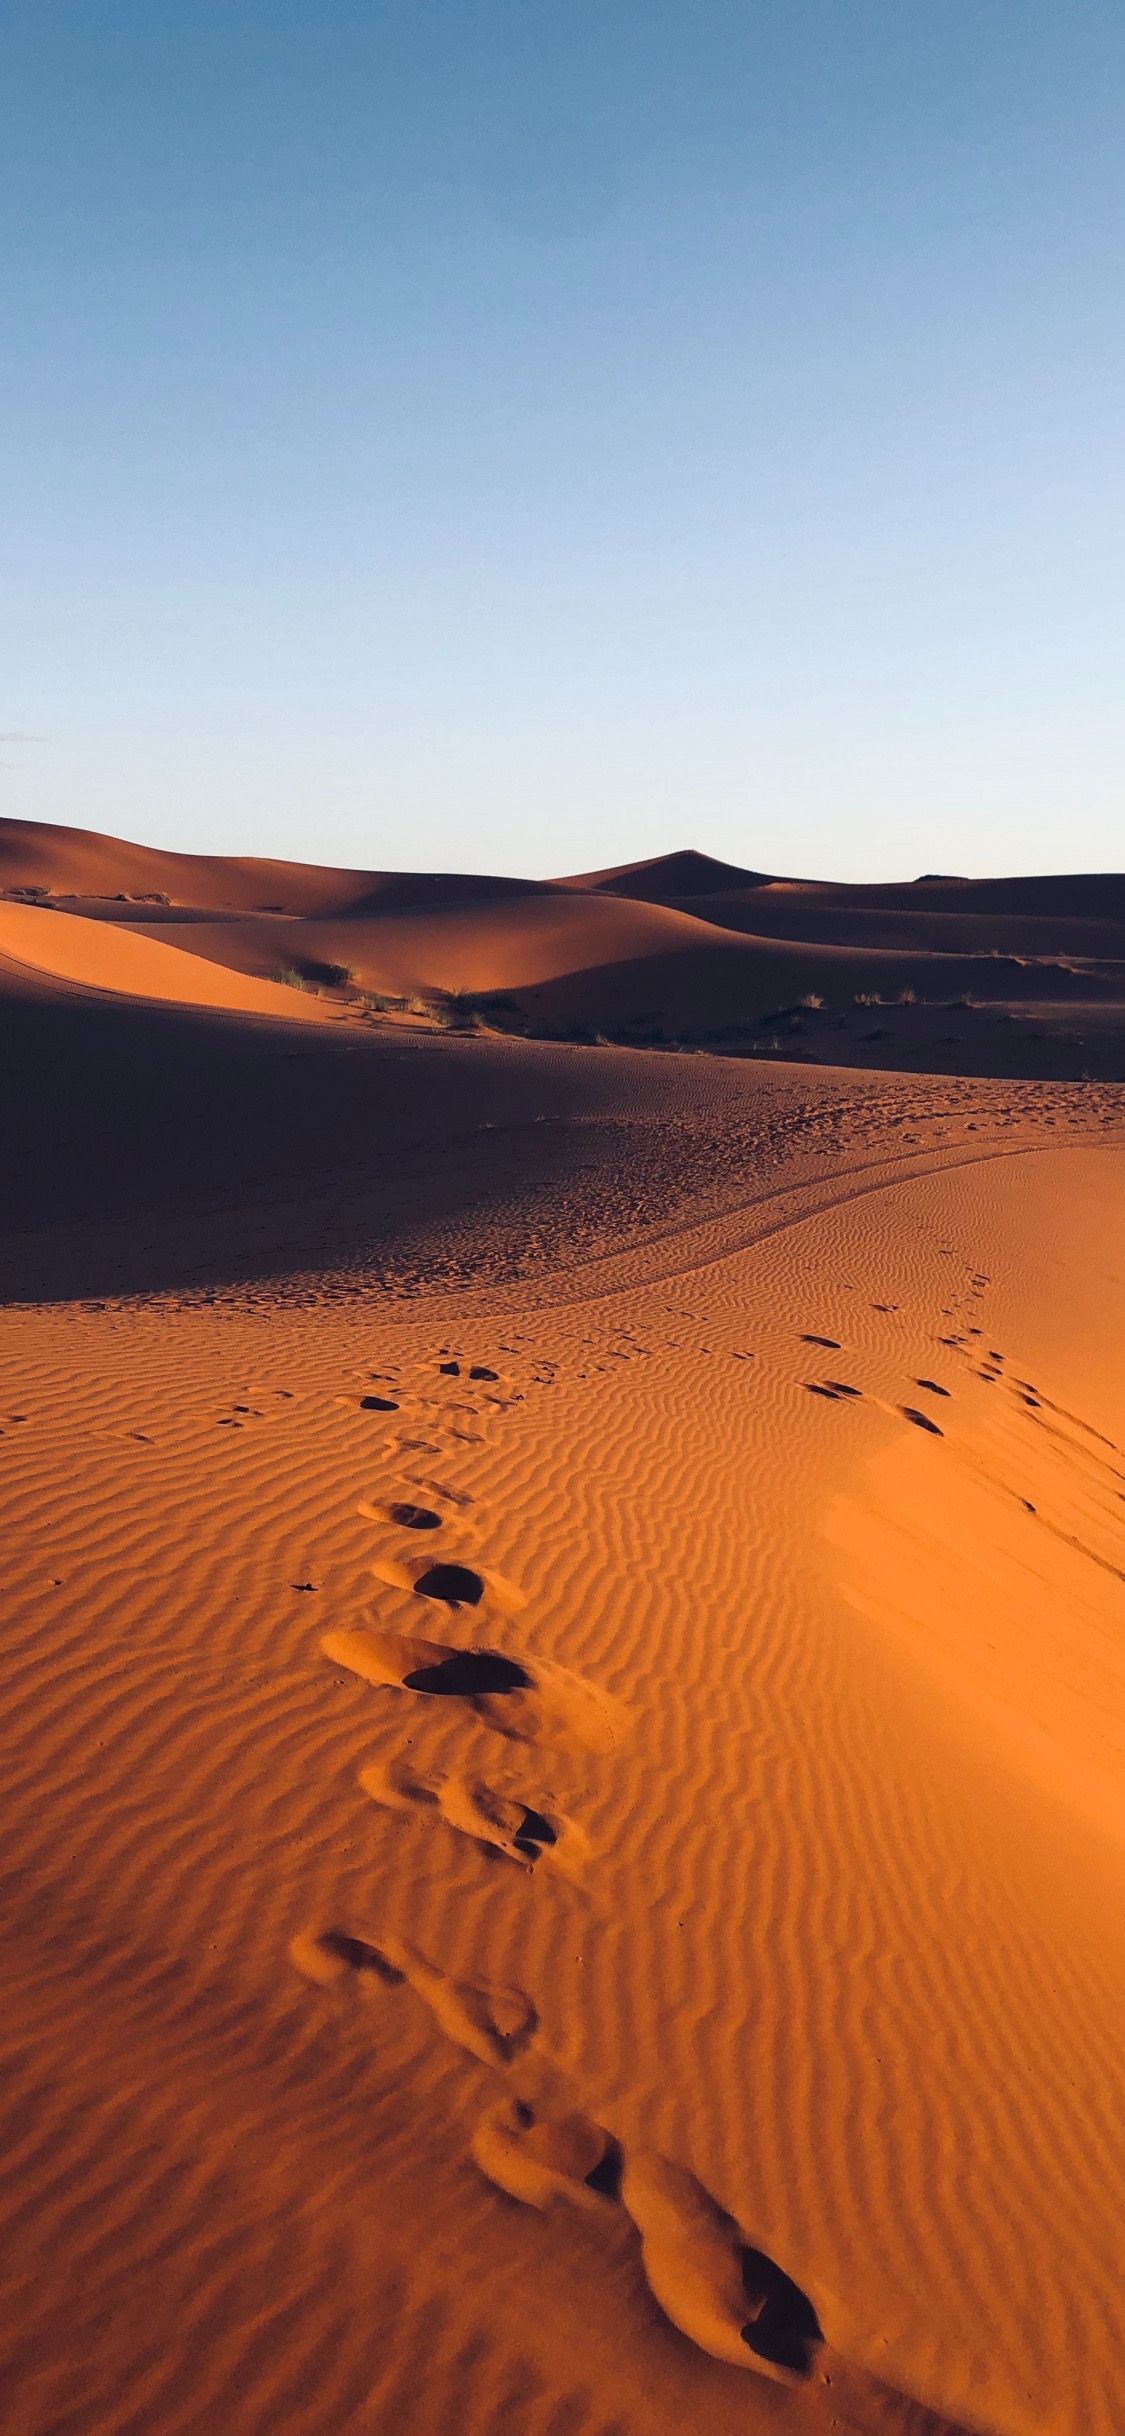 Footprints in the sand at the desert - Desert